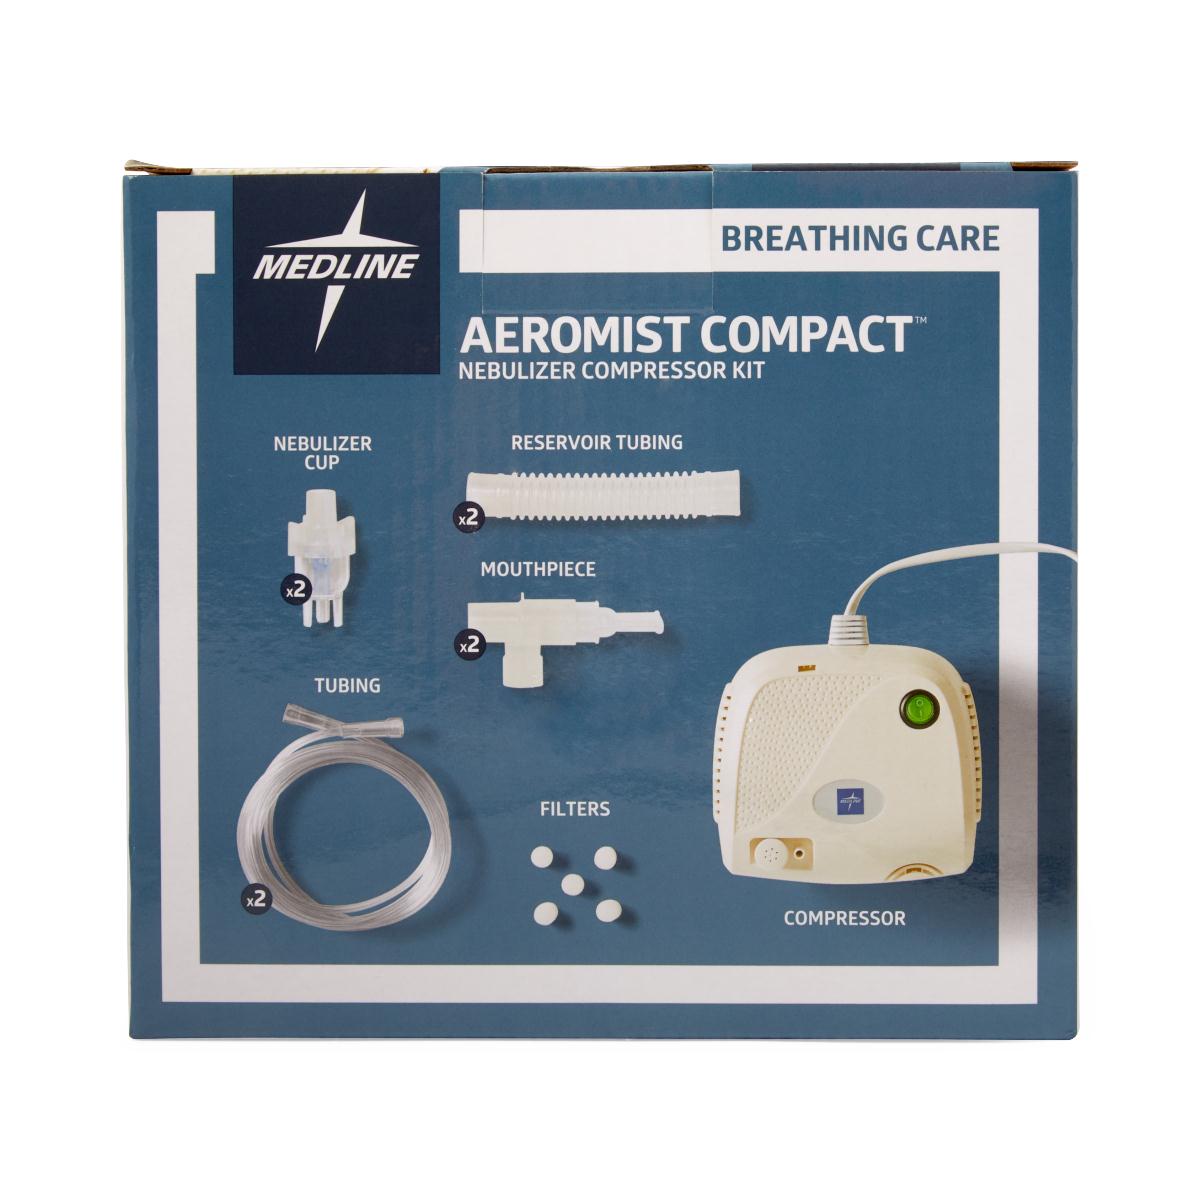 Aeromist Nebulizer Compressor with Nebulizer Kit